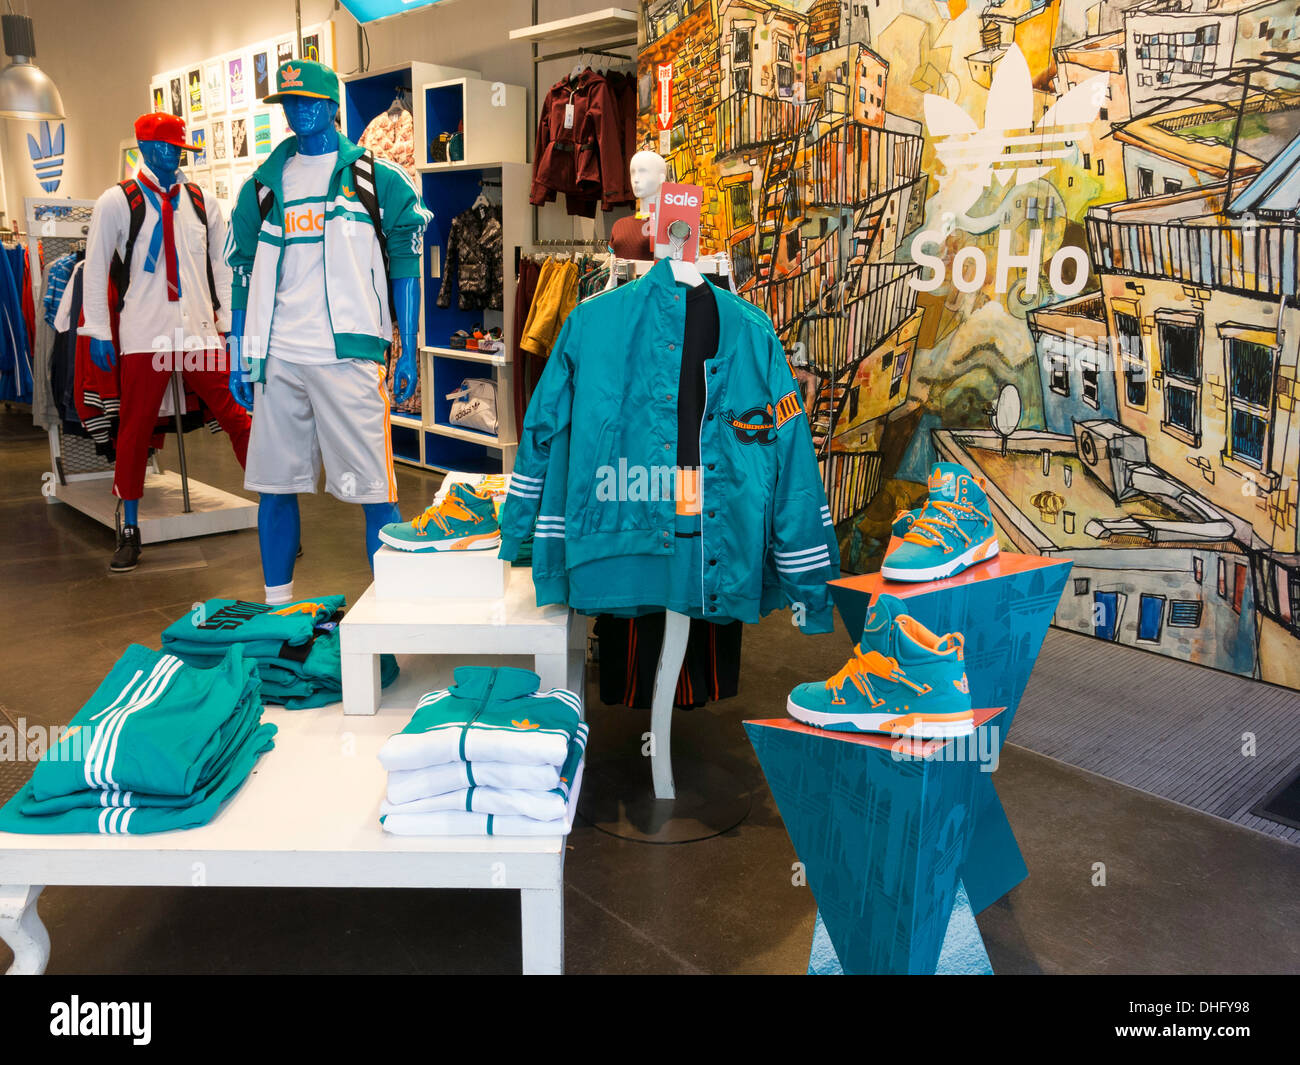 Athletic Clothing Display, Adidas Store, SoHo, NYC, USA Stock Photo - Alamy